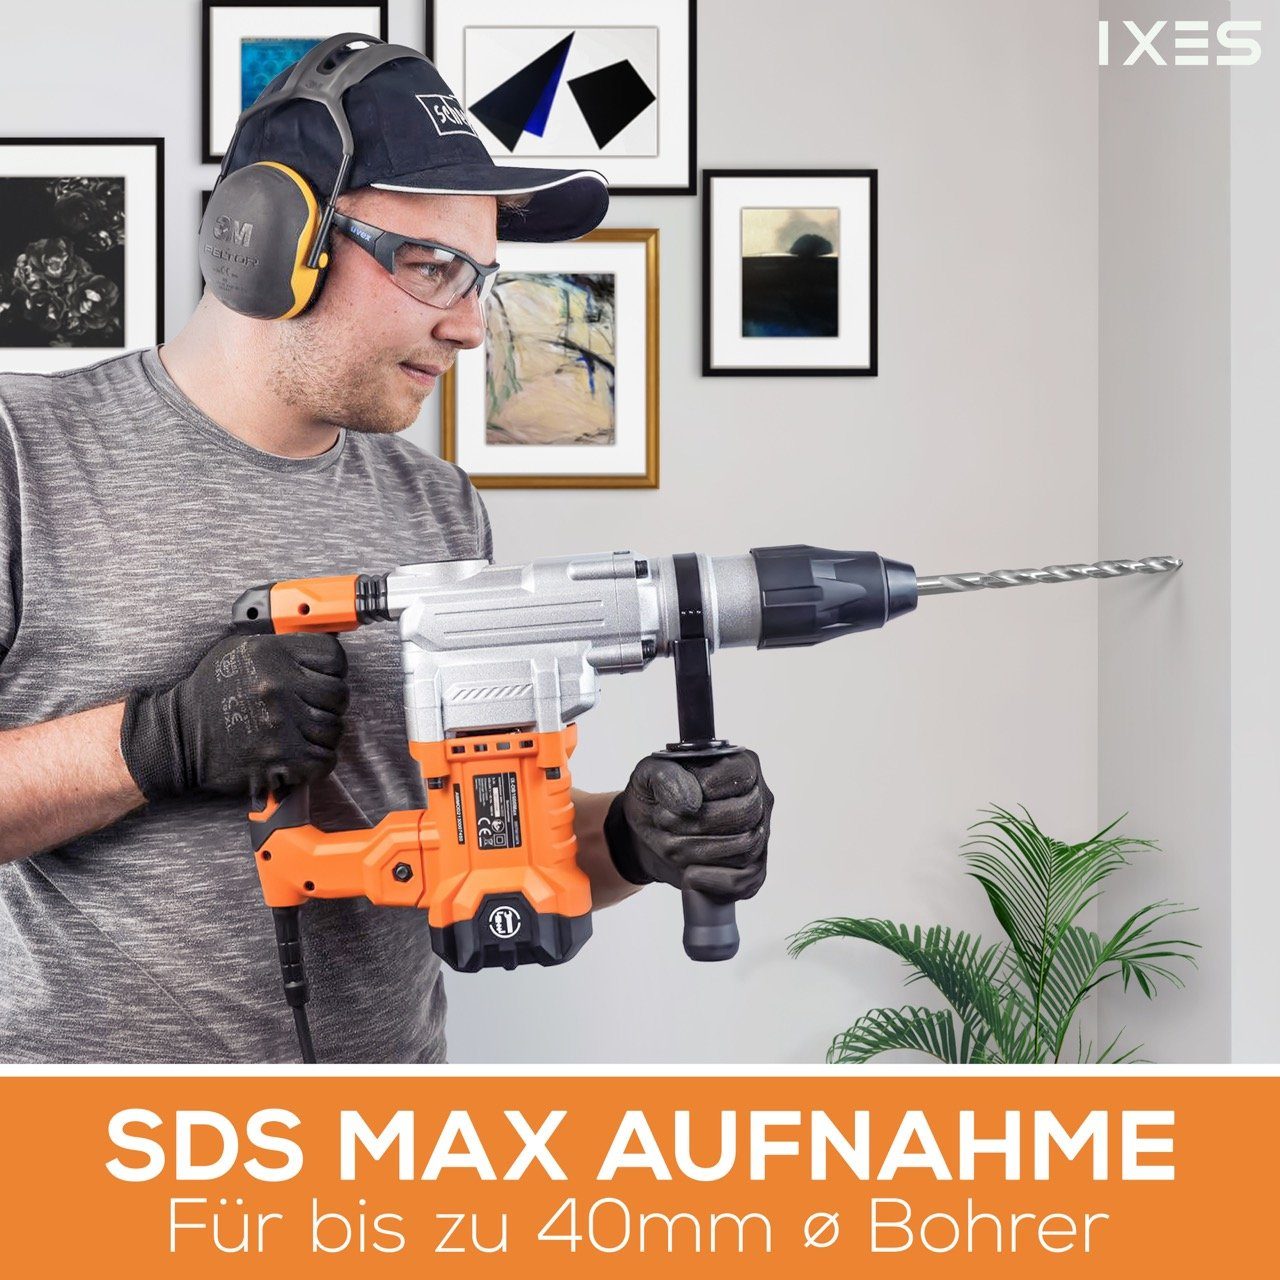 Scheppach Bohrhammer IXES IX-DB1600Max Stemmhammer SDSMAX 1600W V Bohrhammer 230 10J Schlaghammer